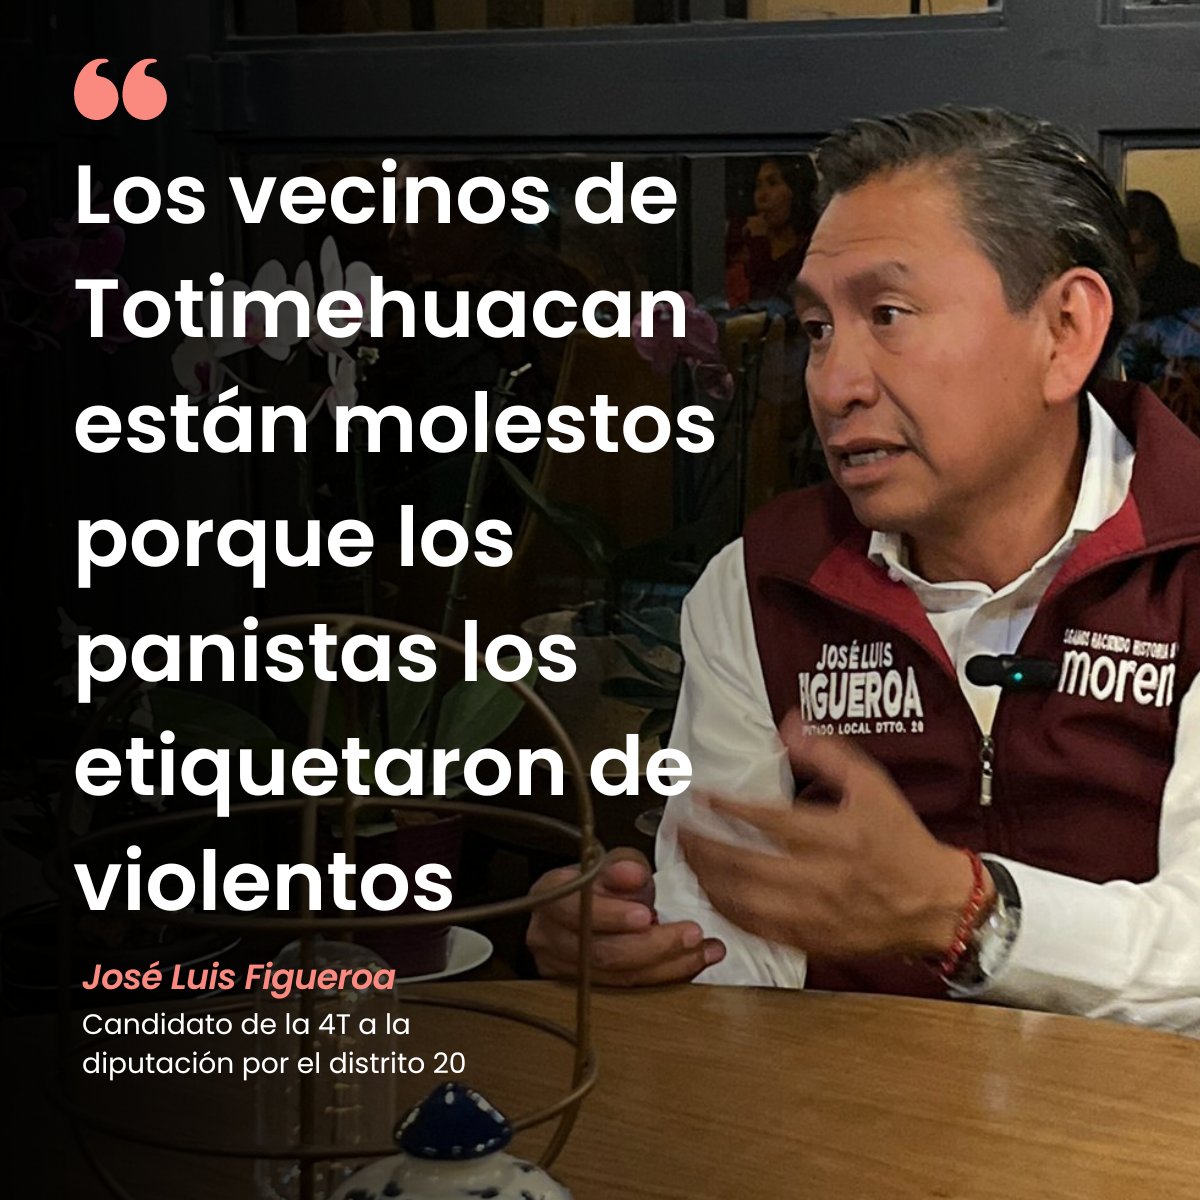 #LaPostal 'Los vecinos de Totimehuacan están molestos porque los panistas los etiquetaron de violentos': @JLuis_Figueroa Mira la #entrevista completa📷 bit.ly/49MYMPH